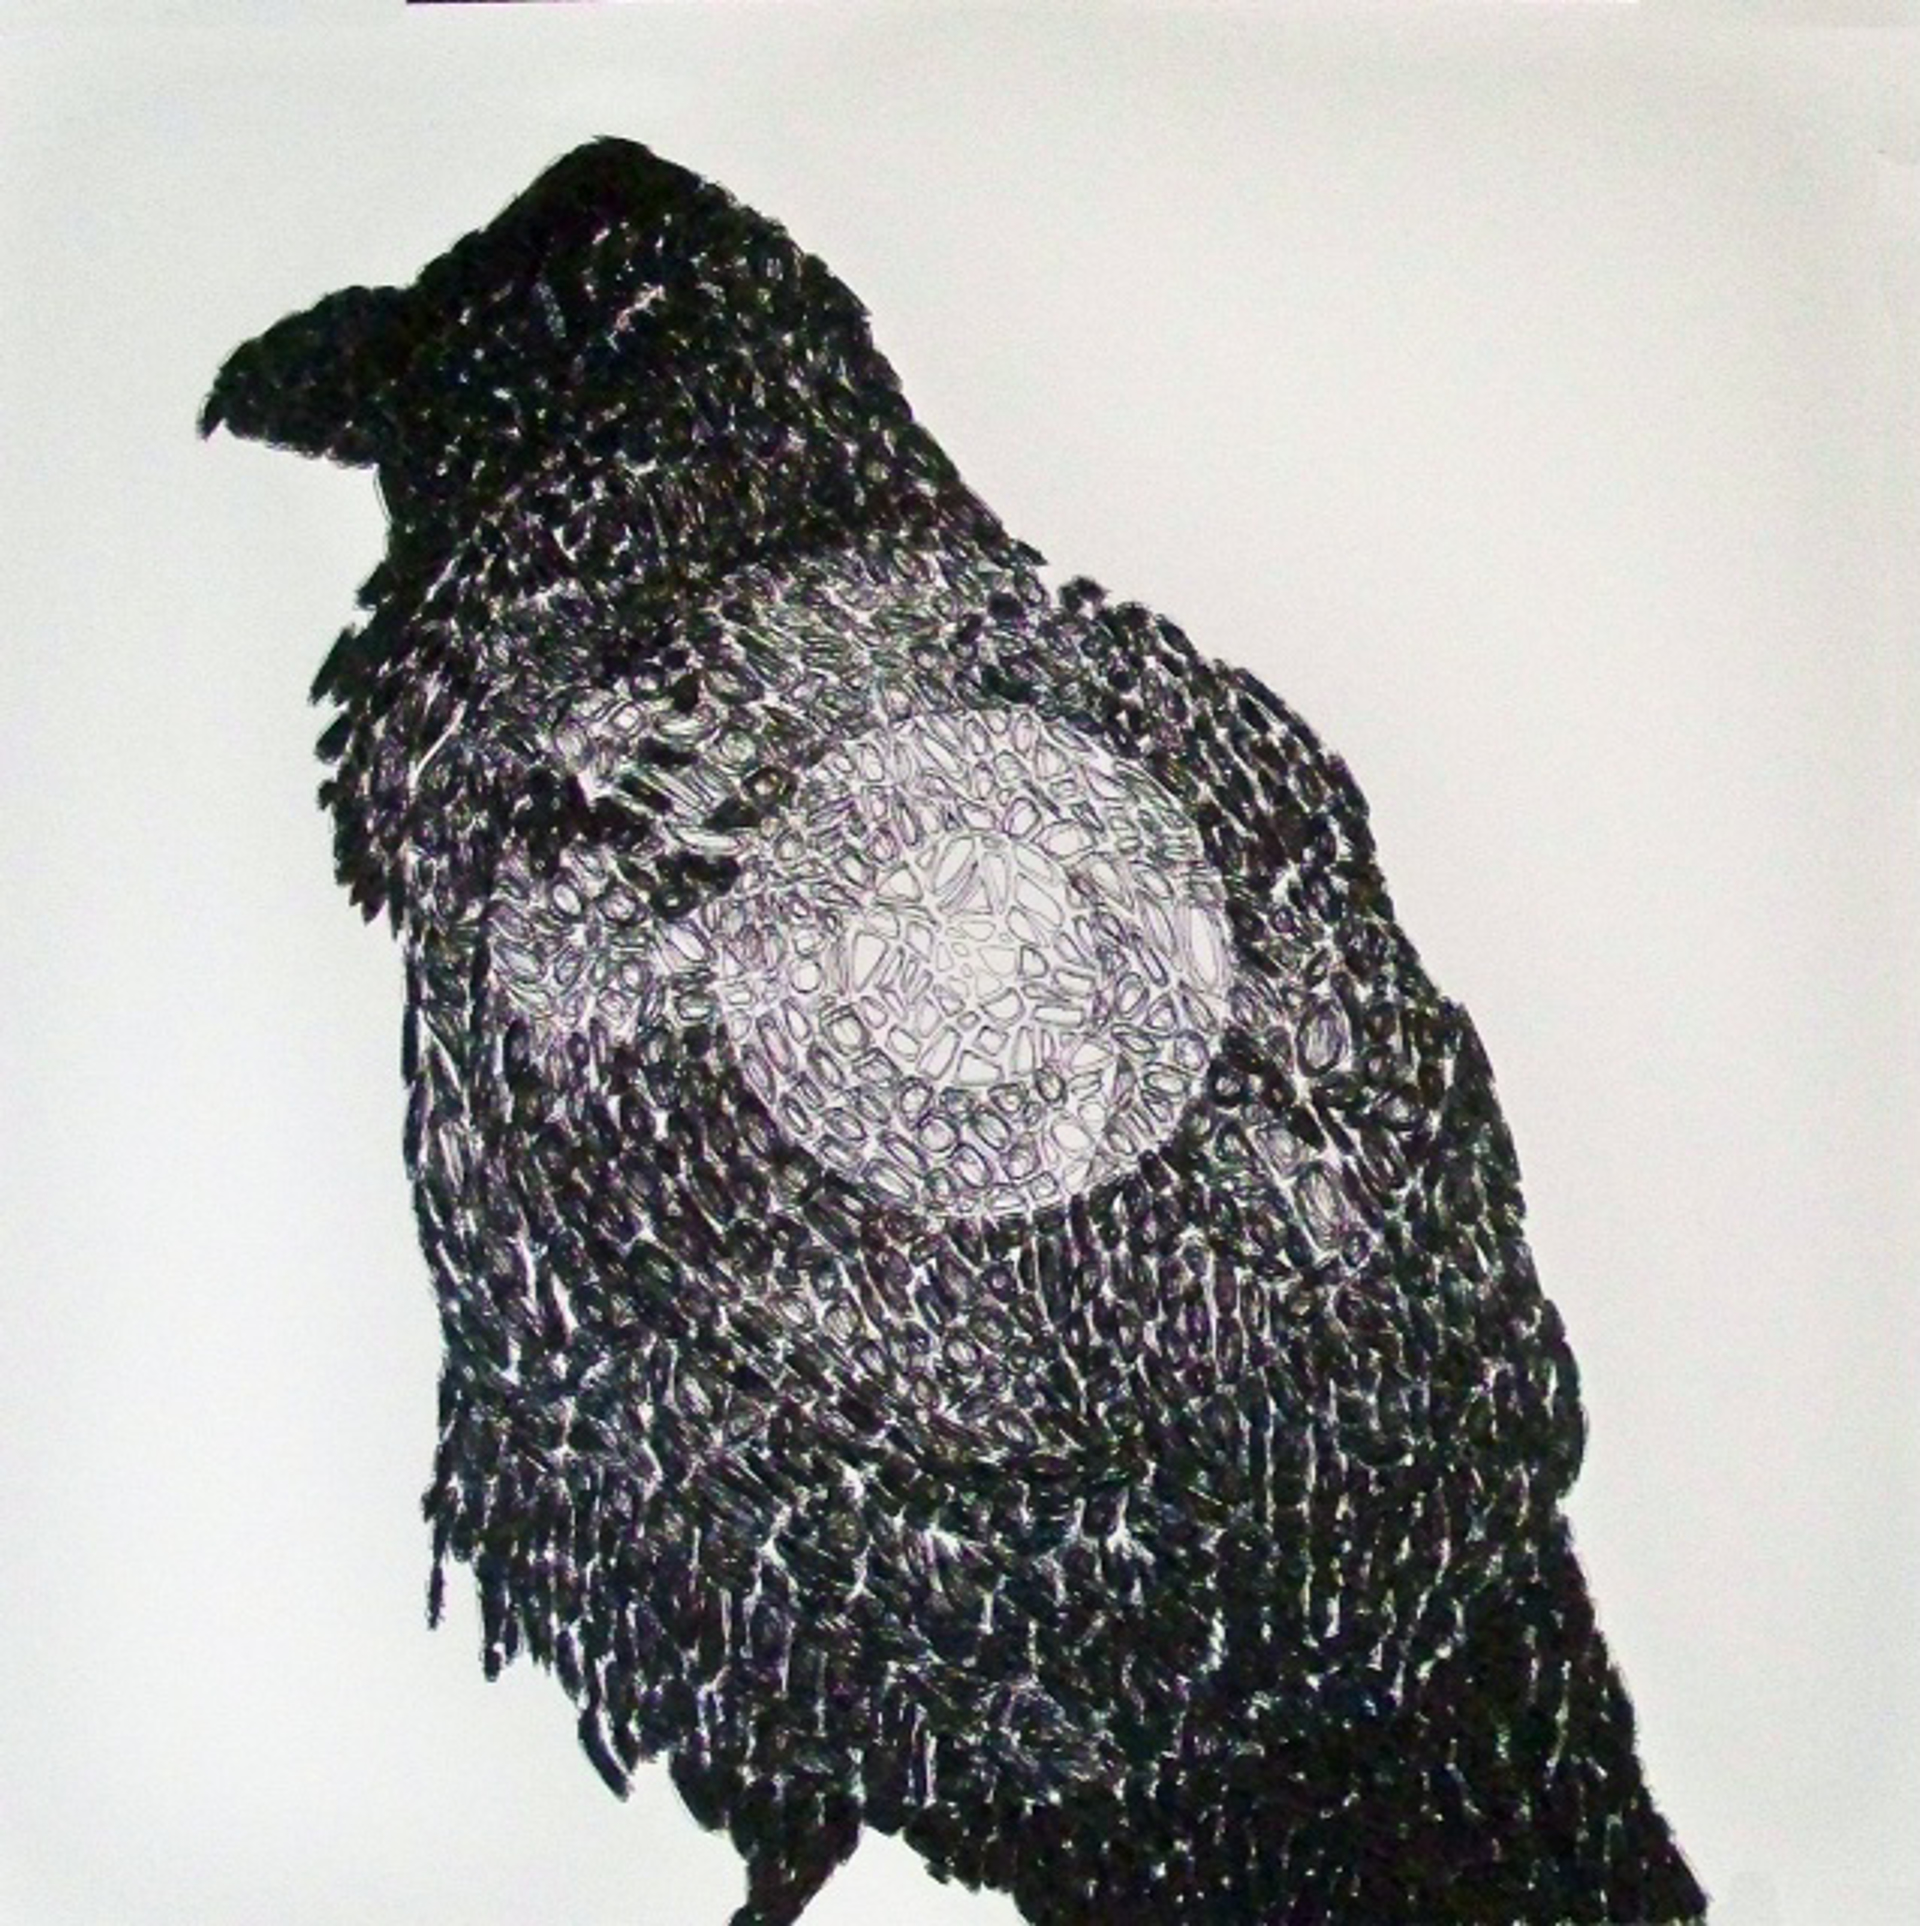 43,133 (Raven) by John Adelman